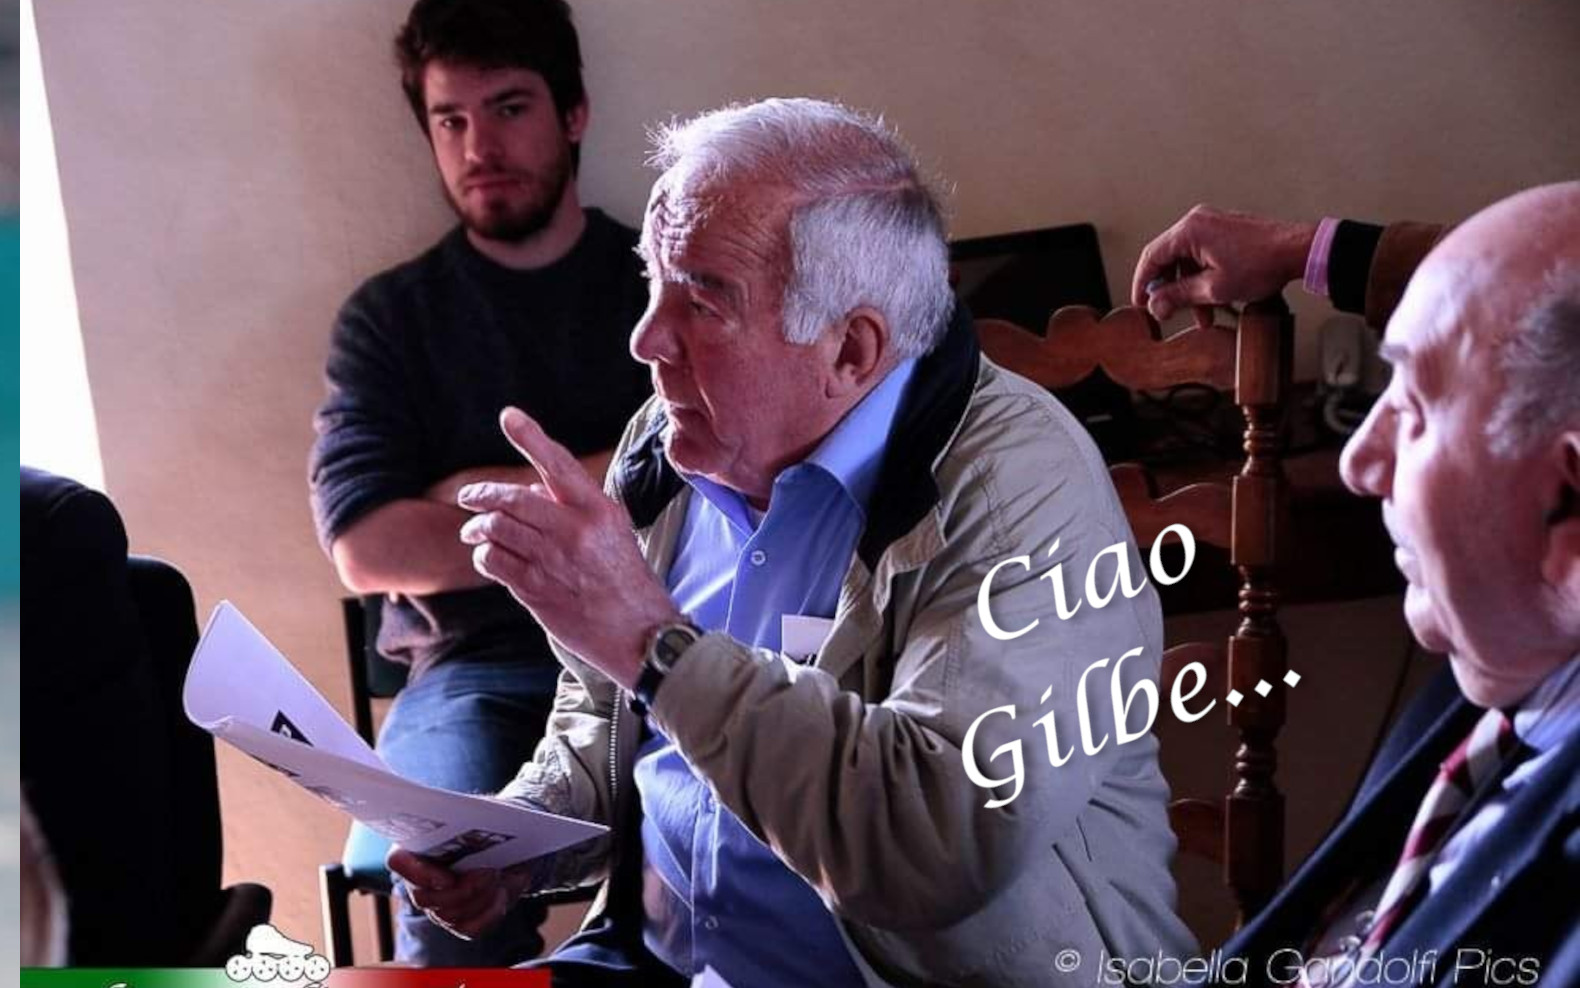 Ciao Gilbe... una raccolta per ADO-Palestra Ginnastica Ferrara a.s.d.